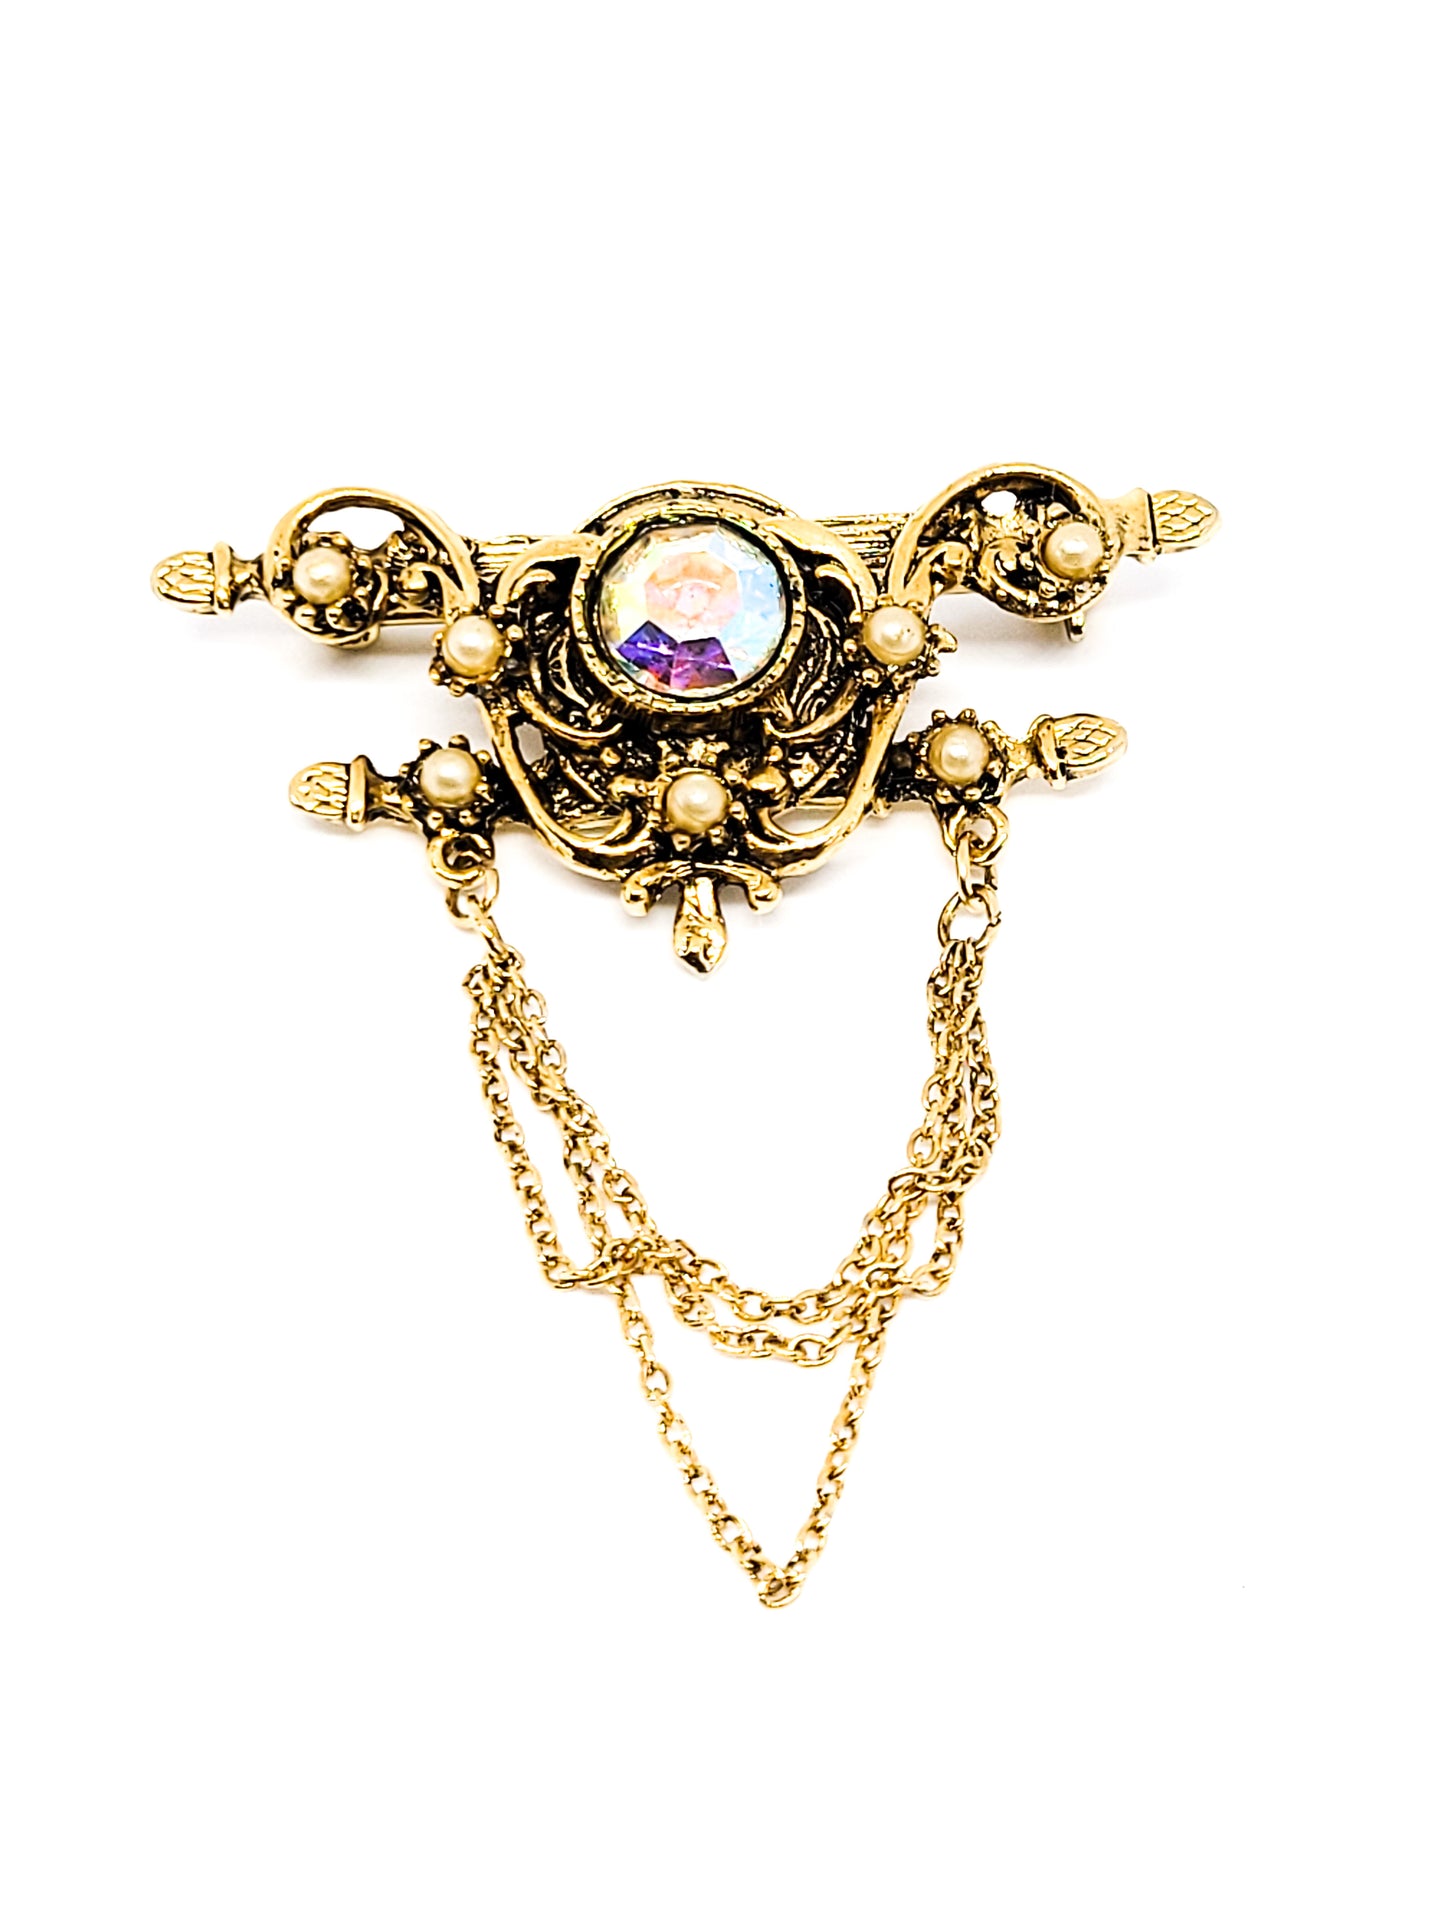 Festoon style pearl and aurora borealis rhinestone vintage brooch